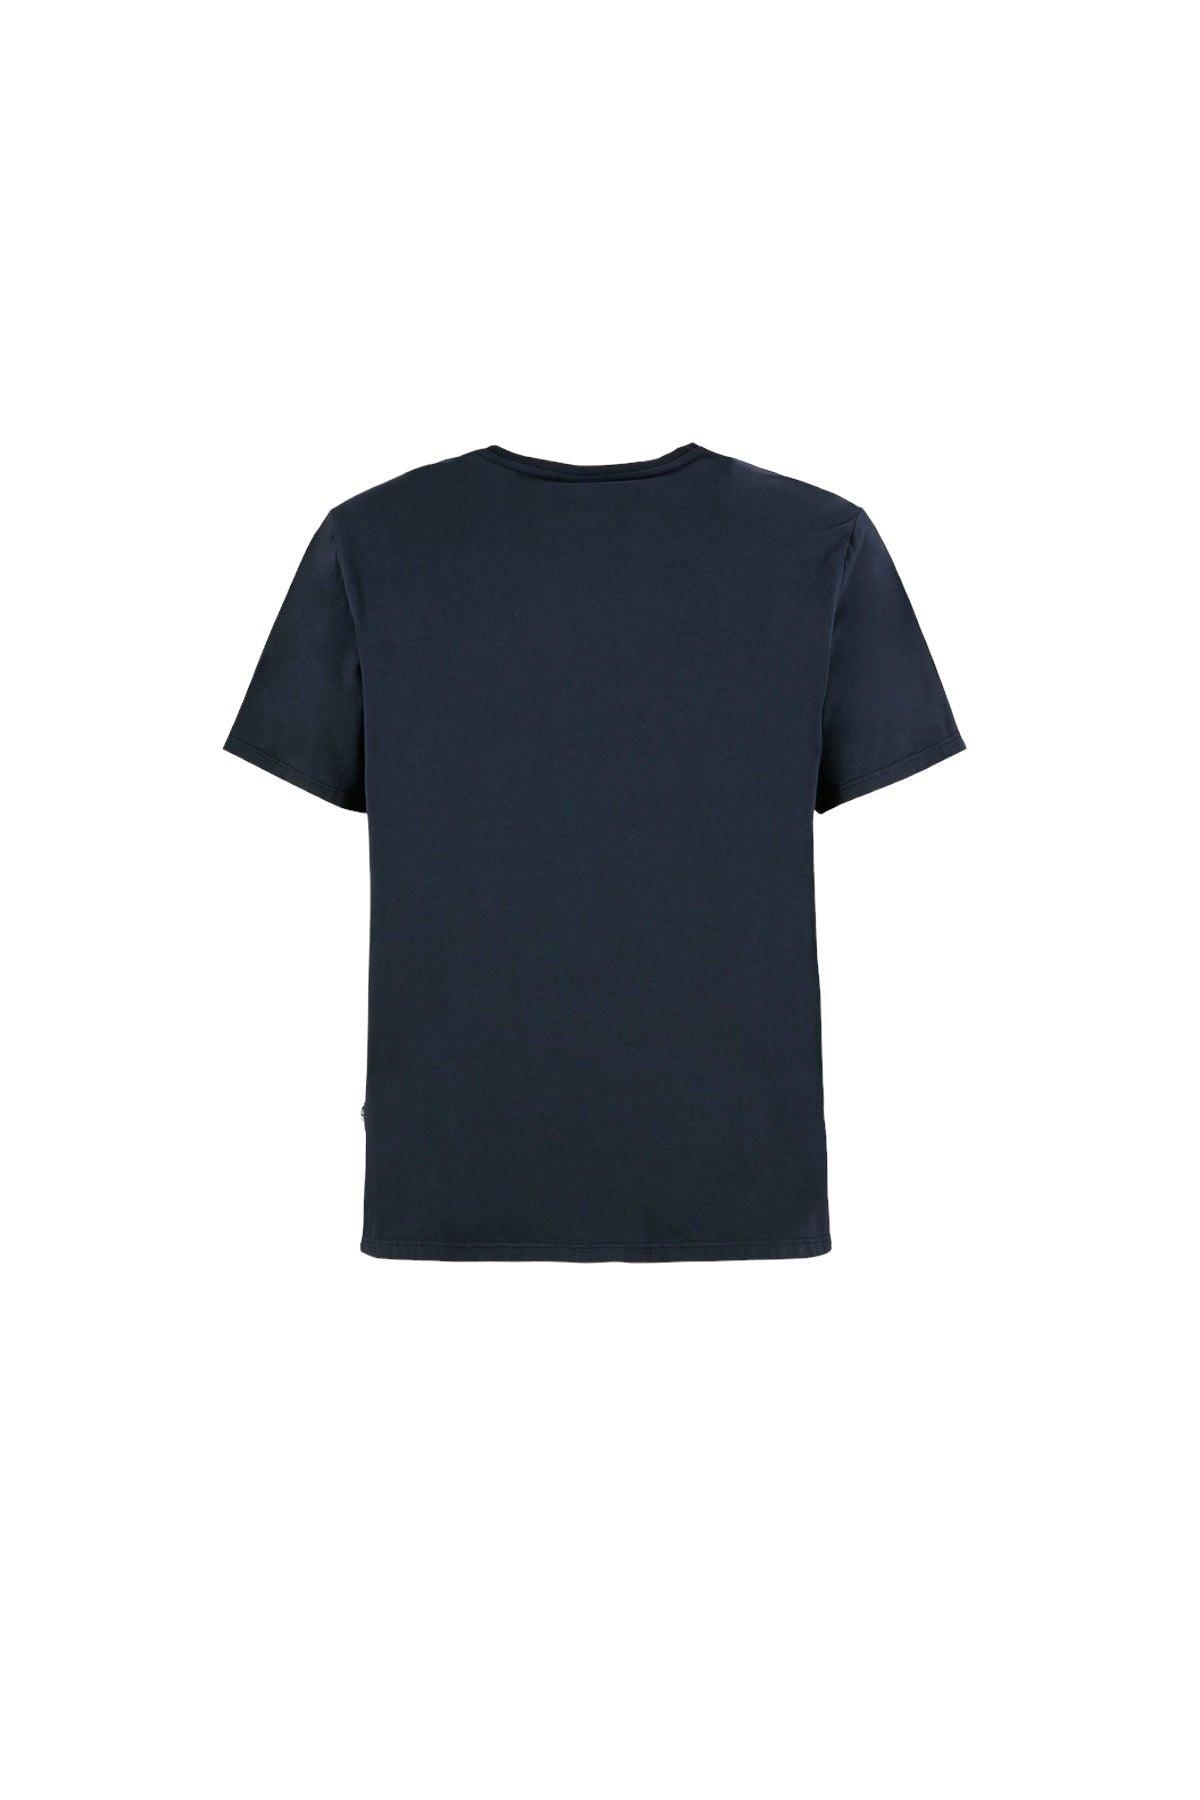 E9 | T-shirt Listen 2.2 Uomo Blue Light - Fabbrica Ski Sises